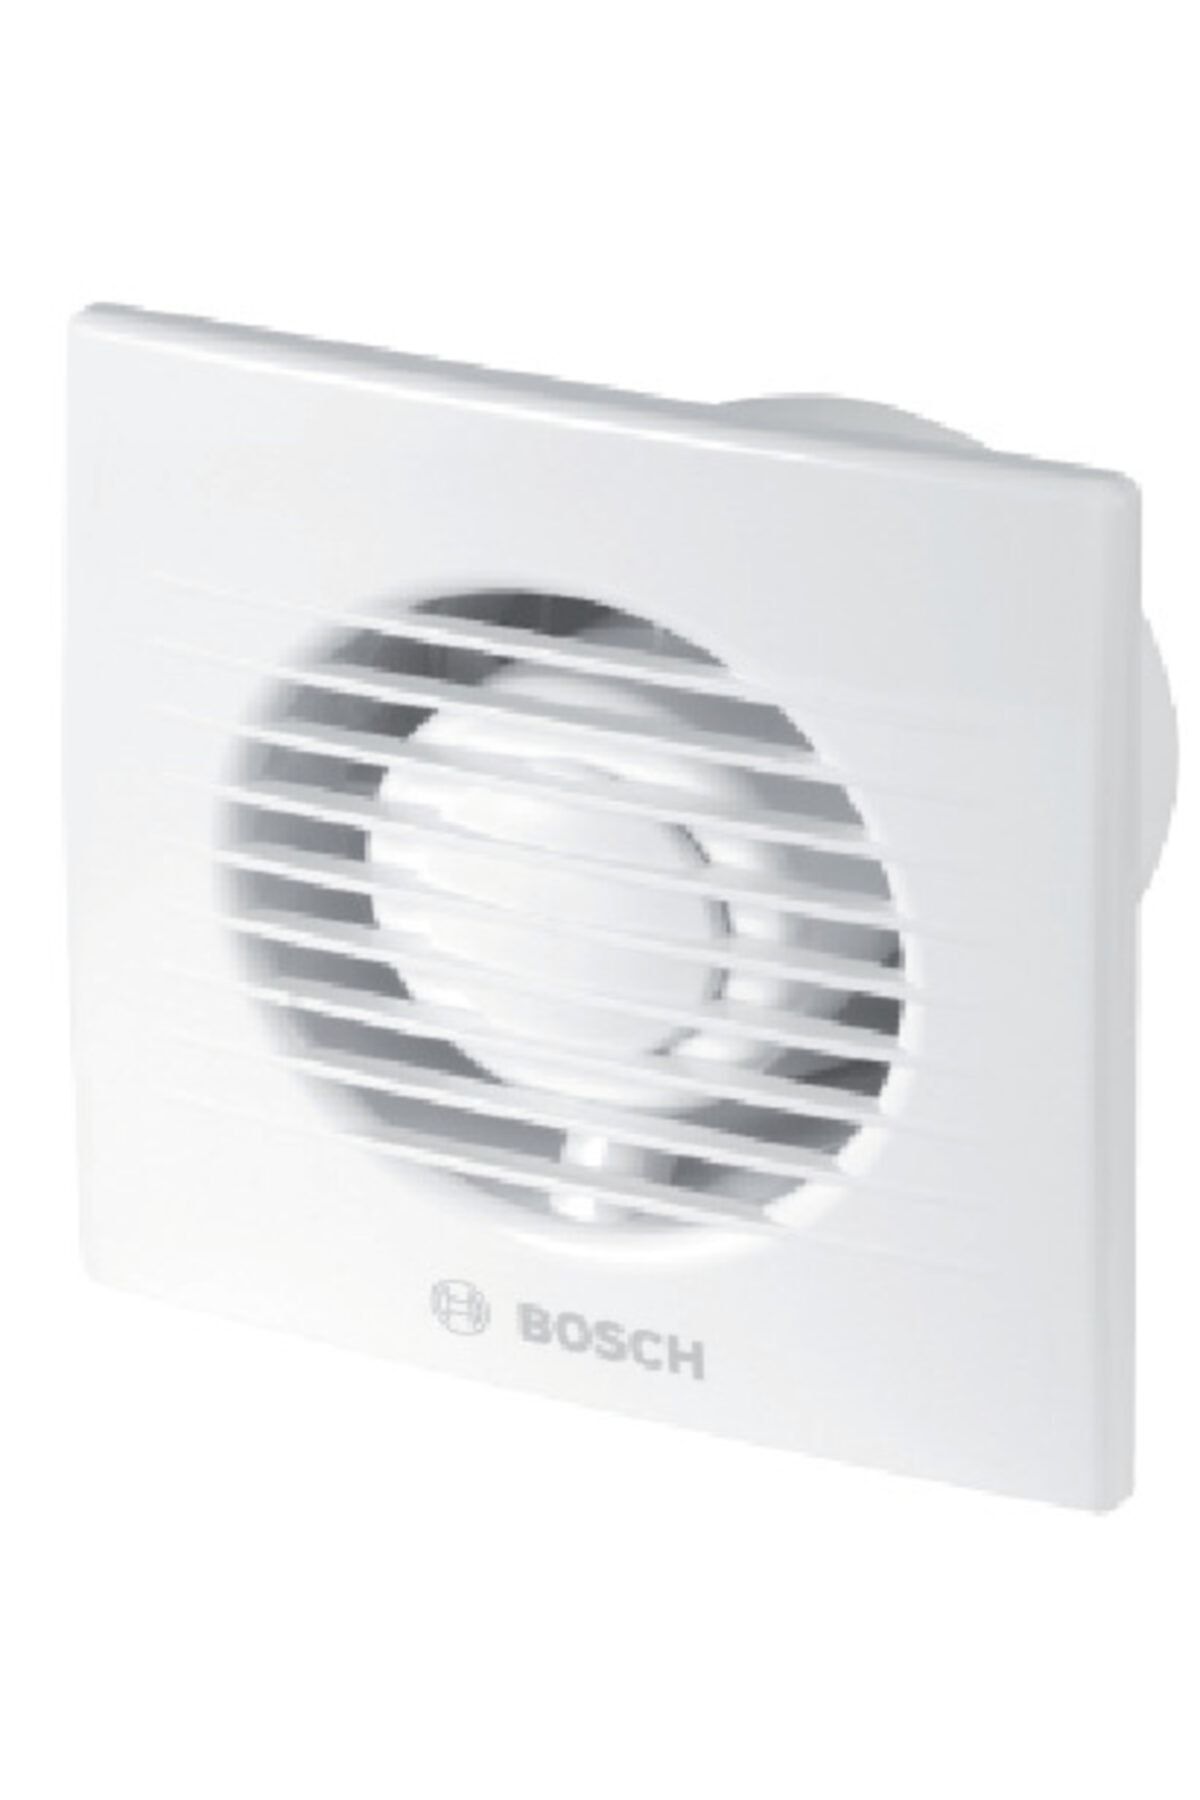 Bosch F1100 W 100 Duvar Tipi Aksiyal Aspiratör